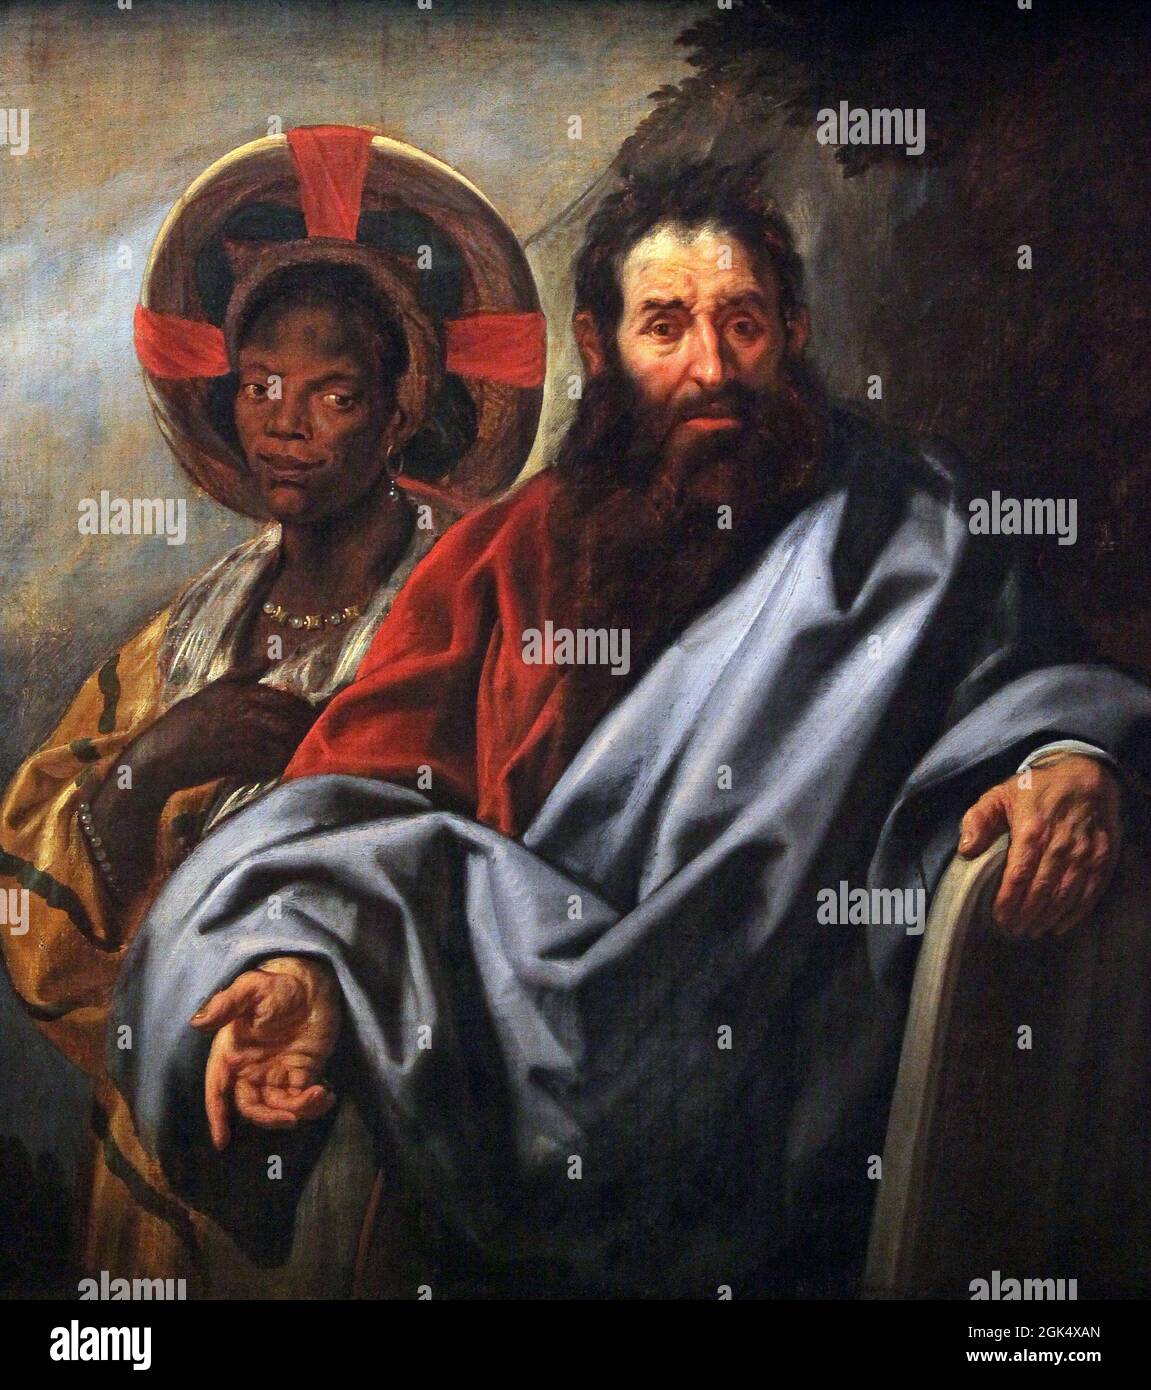 Moses und seine äthiopische Frau Zipporah um 1650 Gemälde von Jacob Jordaens 1593-1678,Flämischer Barockmaler.das Gemälde ist eine Halbzeit-Darstellung des biblischen Propheten Moses und seiner afrikanischen Frau. Stockfoto